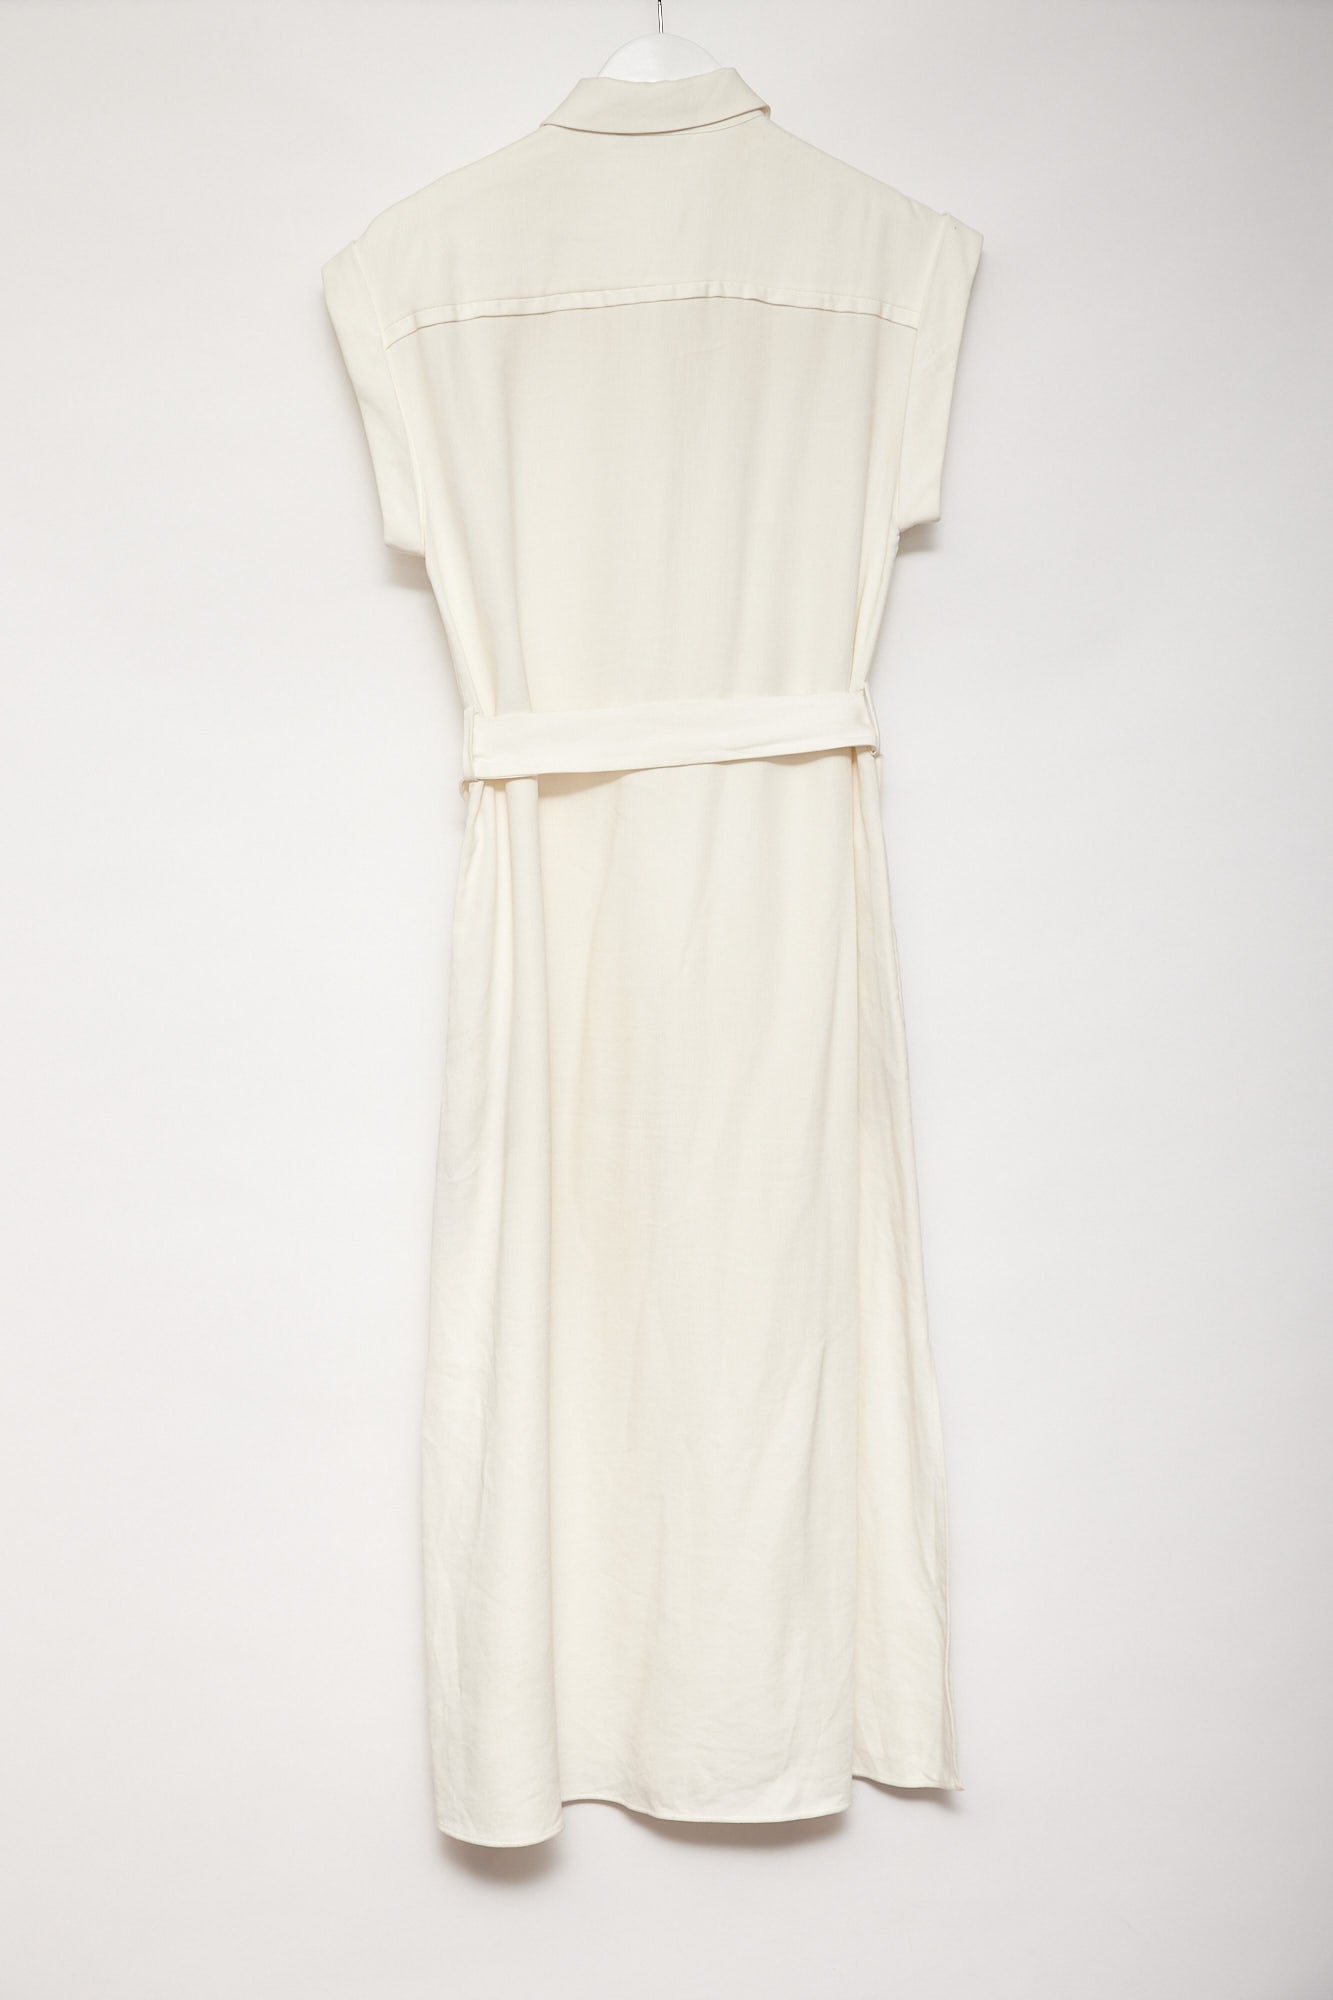 Womens Massimo Dutti white shirt dress size small